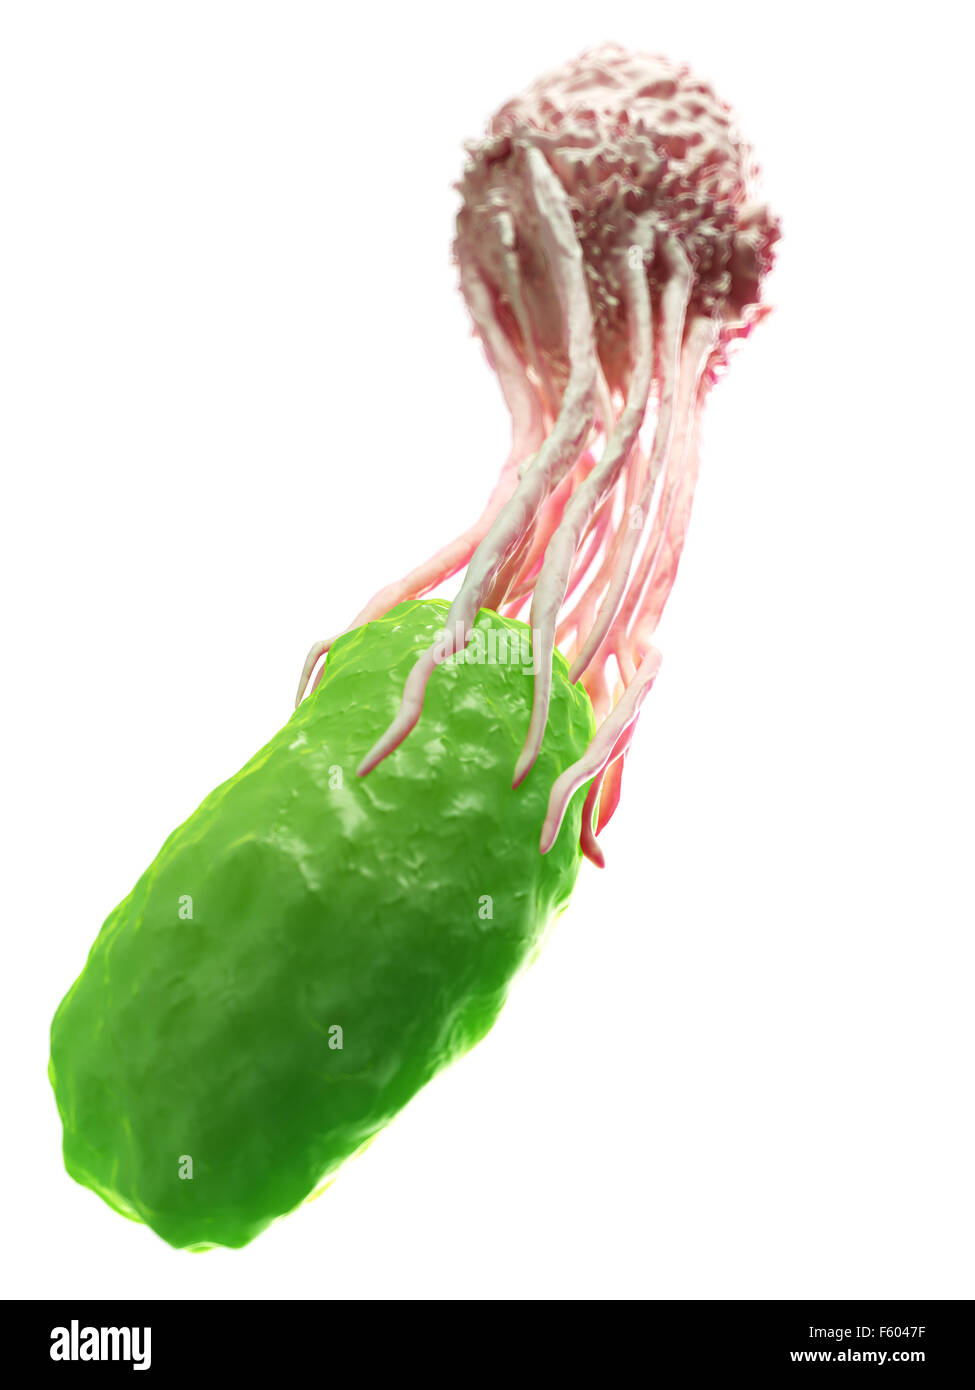 Ilustración médica precisa de un glóbulo blanco envolviendo una bacteria Foto de stock